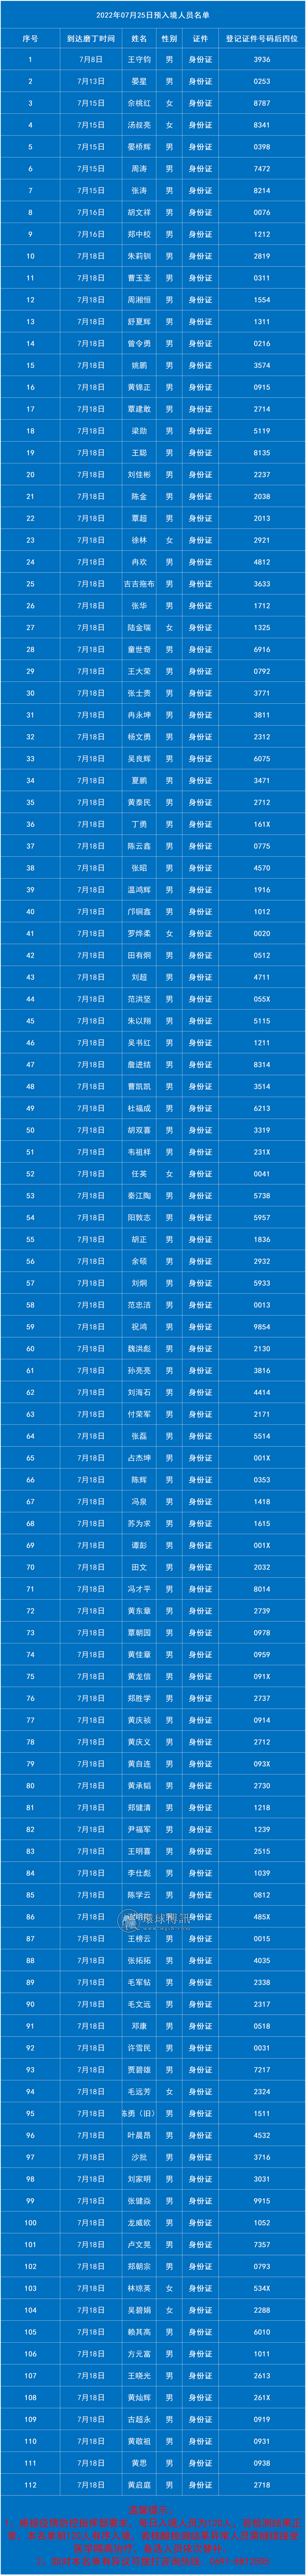 7月25日老挝磨丁预入境中国人员名单